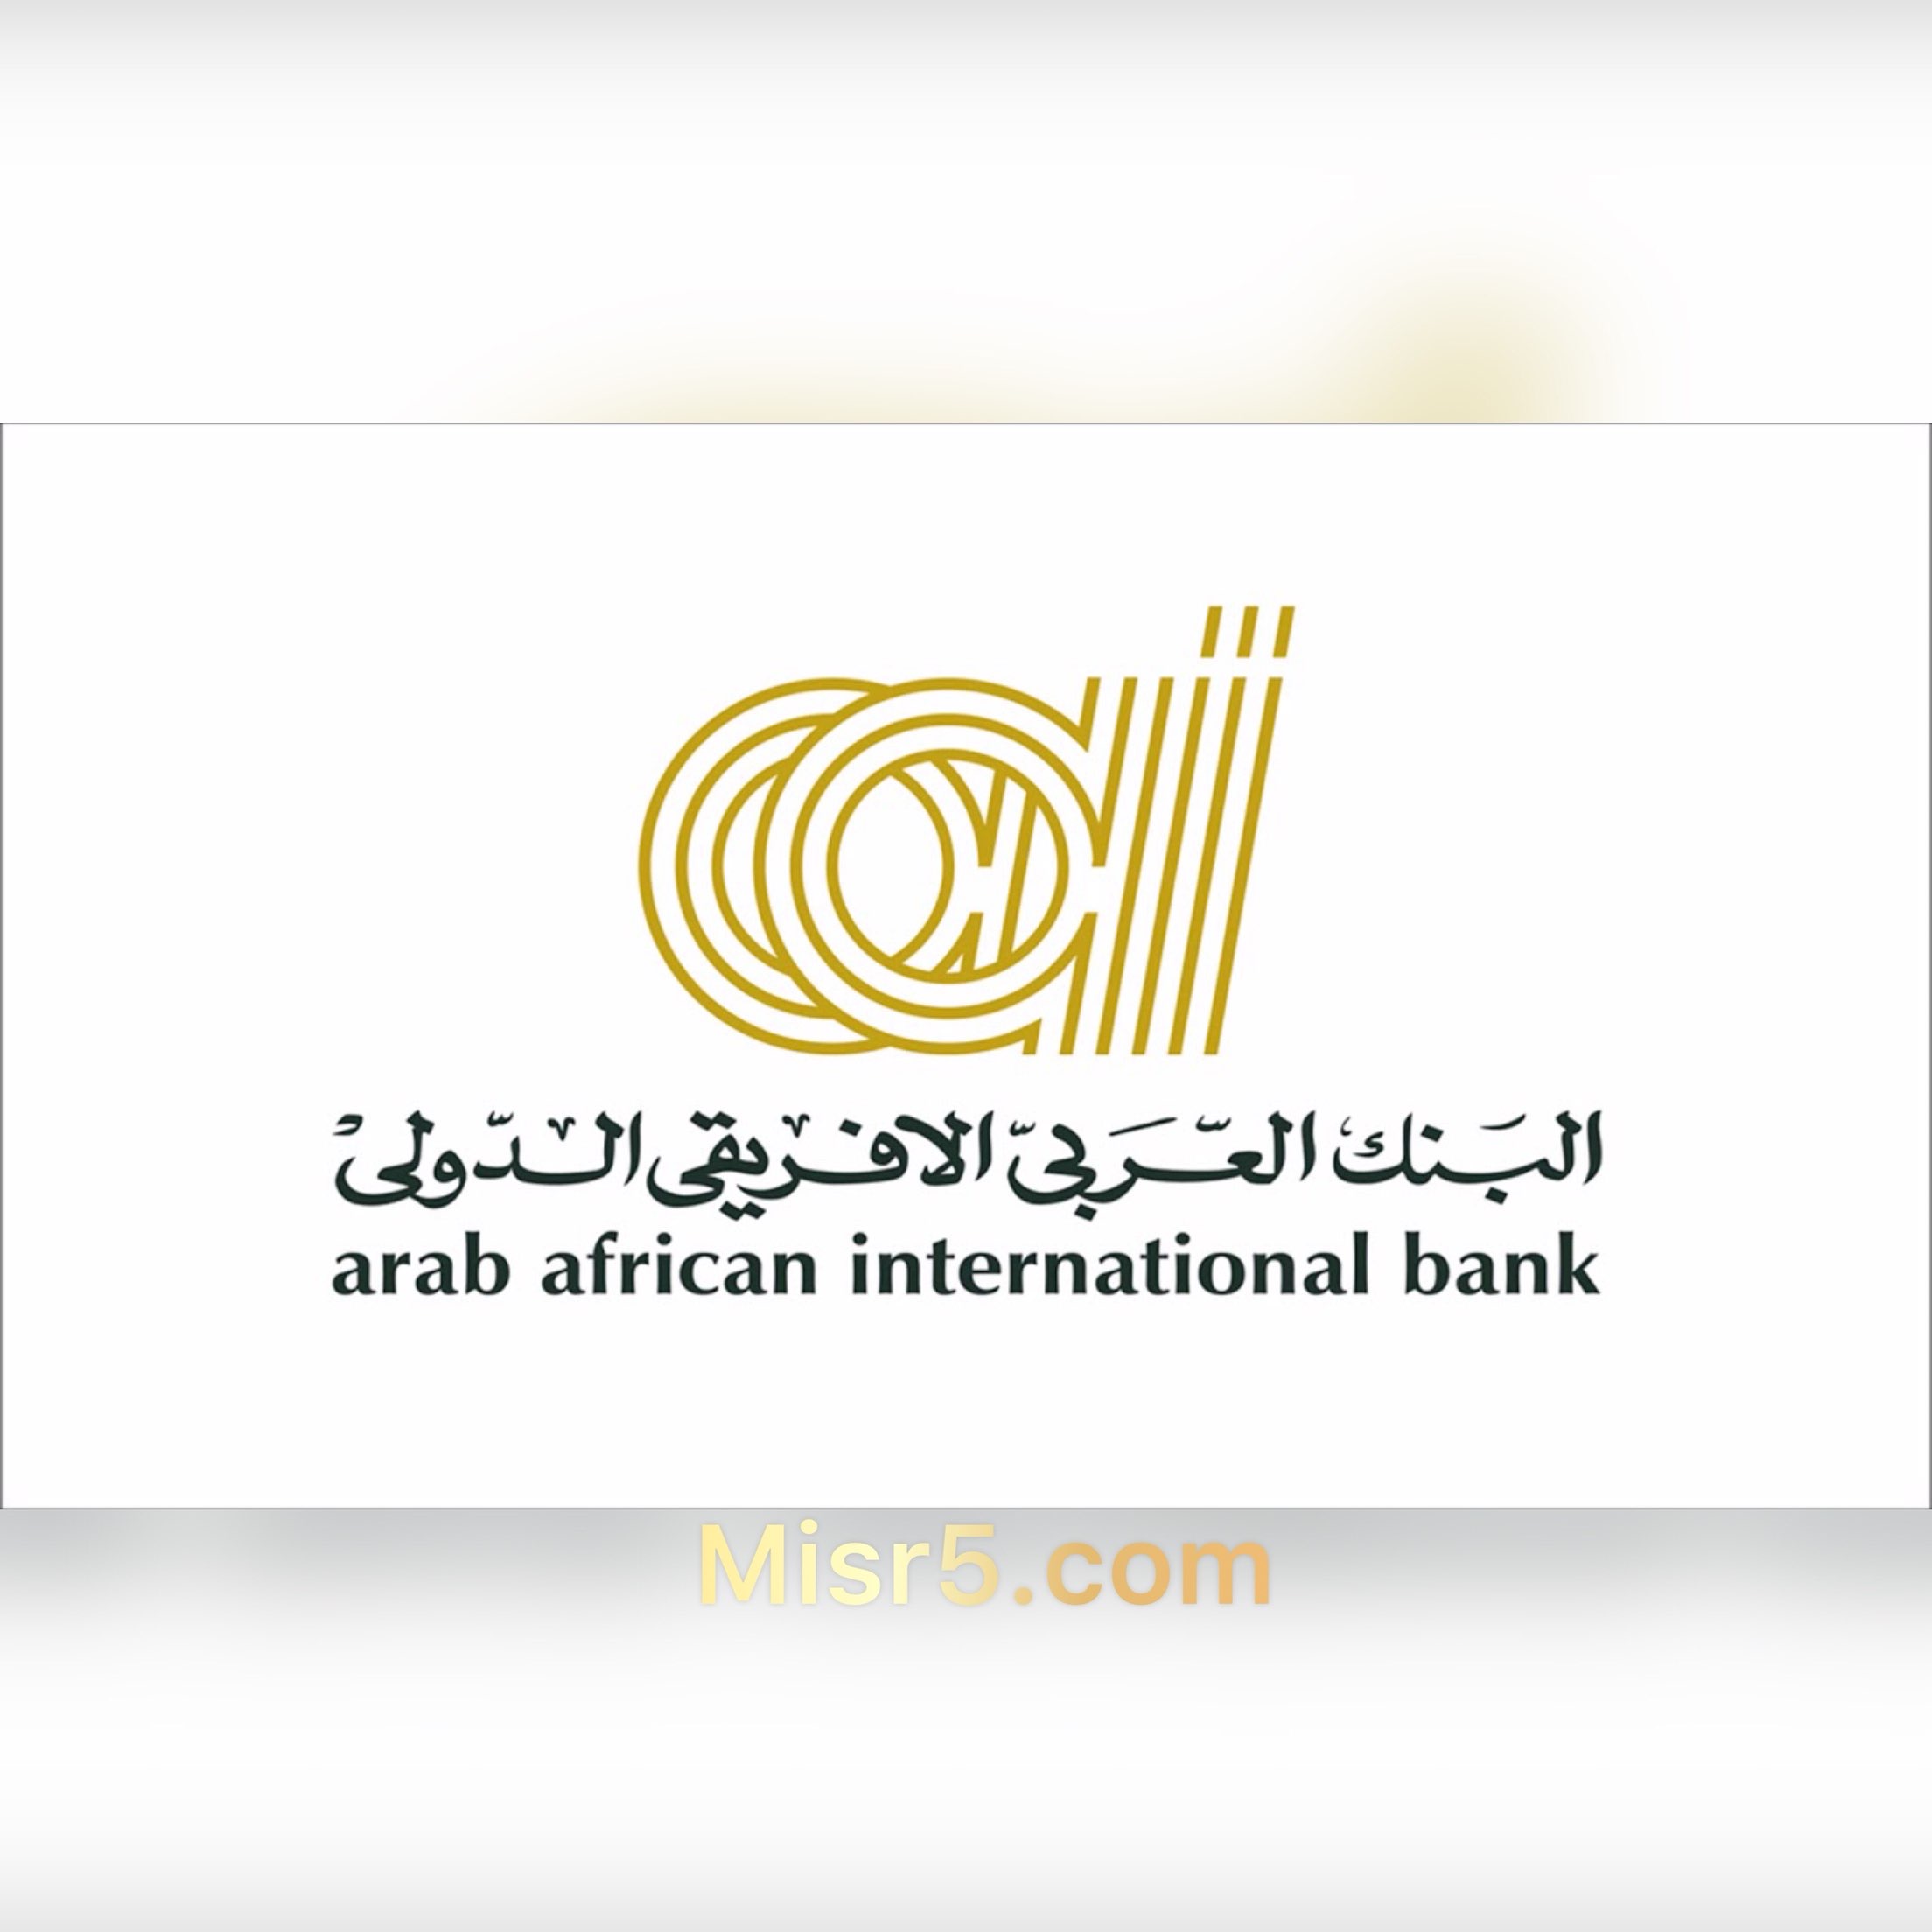 البنك العربي الأفريقي | يطرح 4 أنواع من شهادات الادخار ذات العائد الثابت 2021